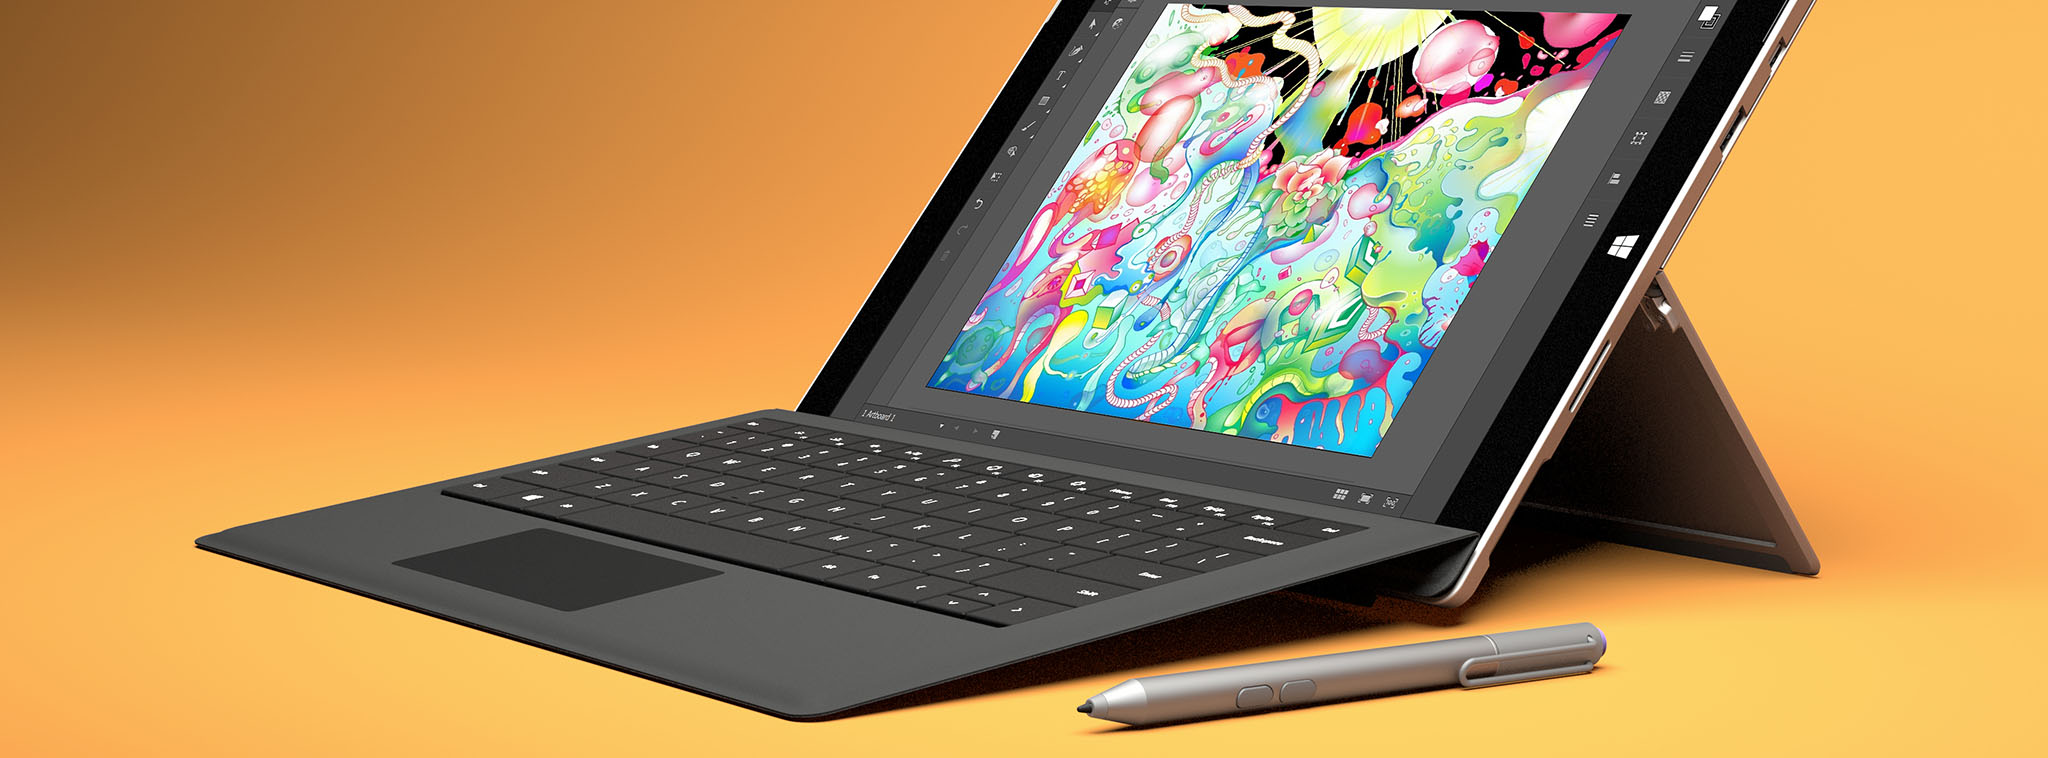 Consumer Reports loại Surface ra khỏi danh sách máy tính nên mua vì quá nhiều người dùng báo lỗi